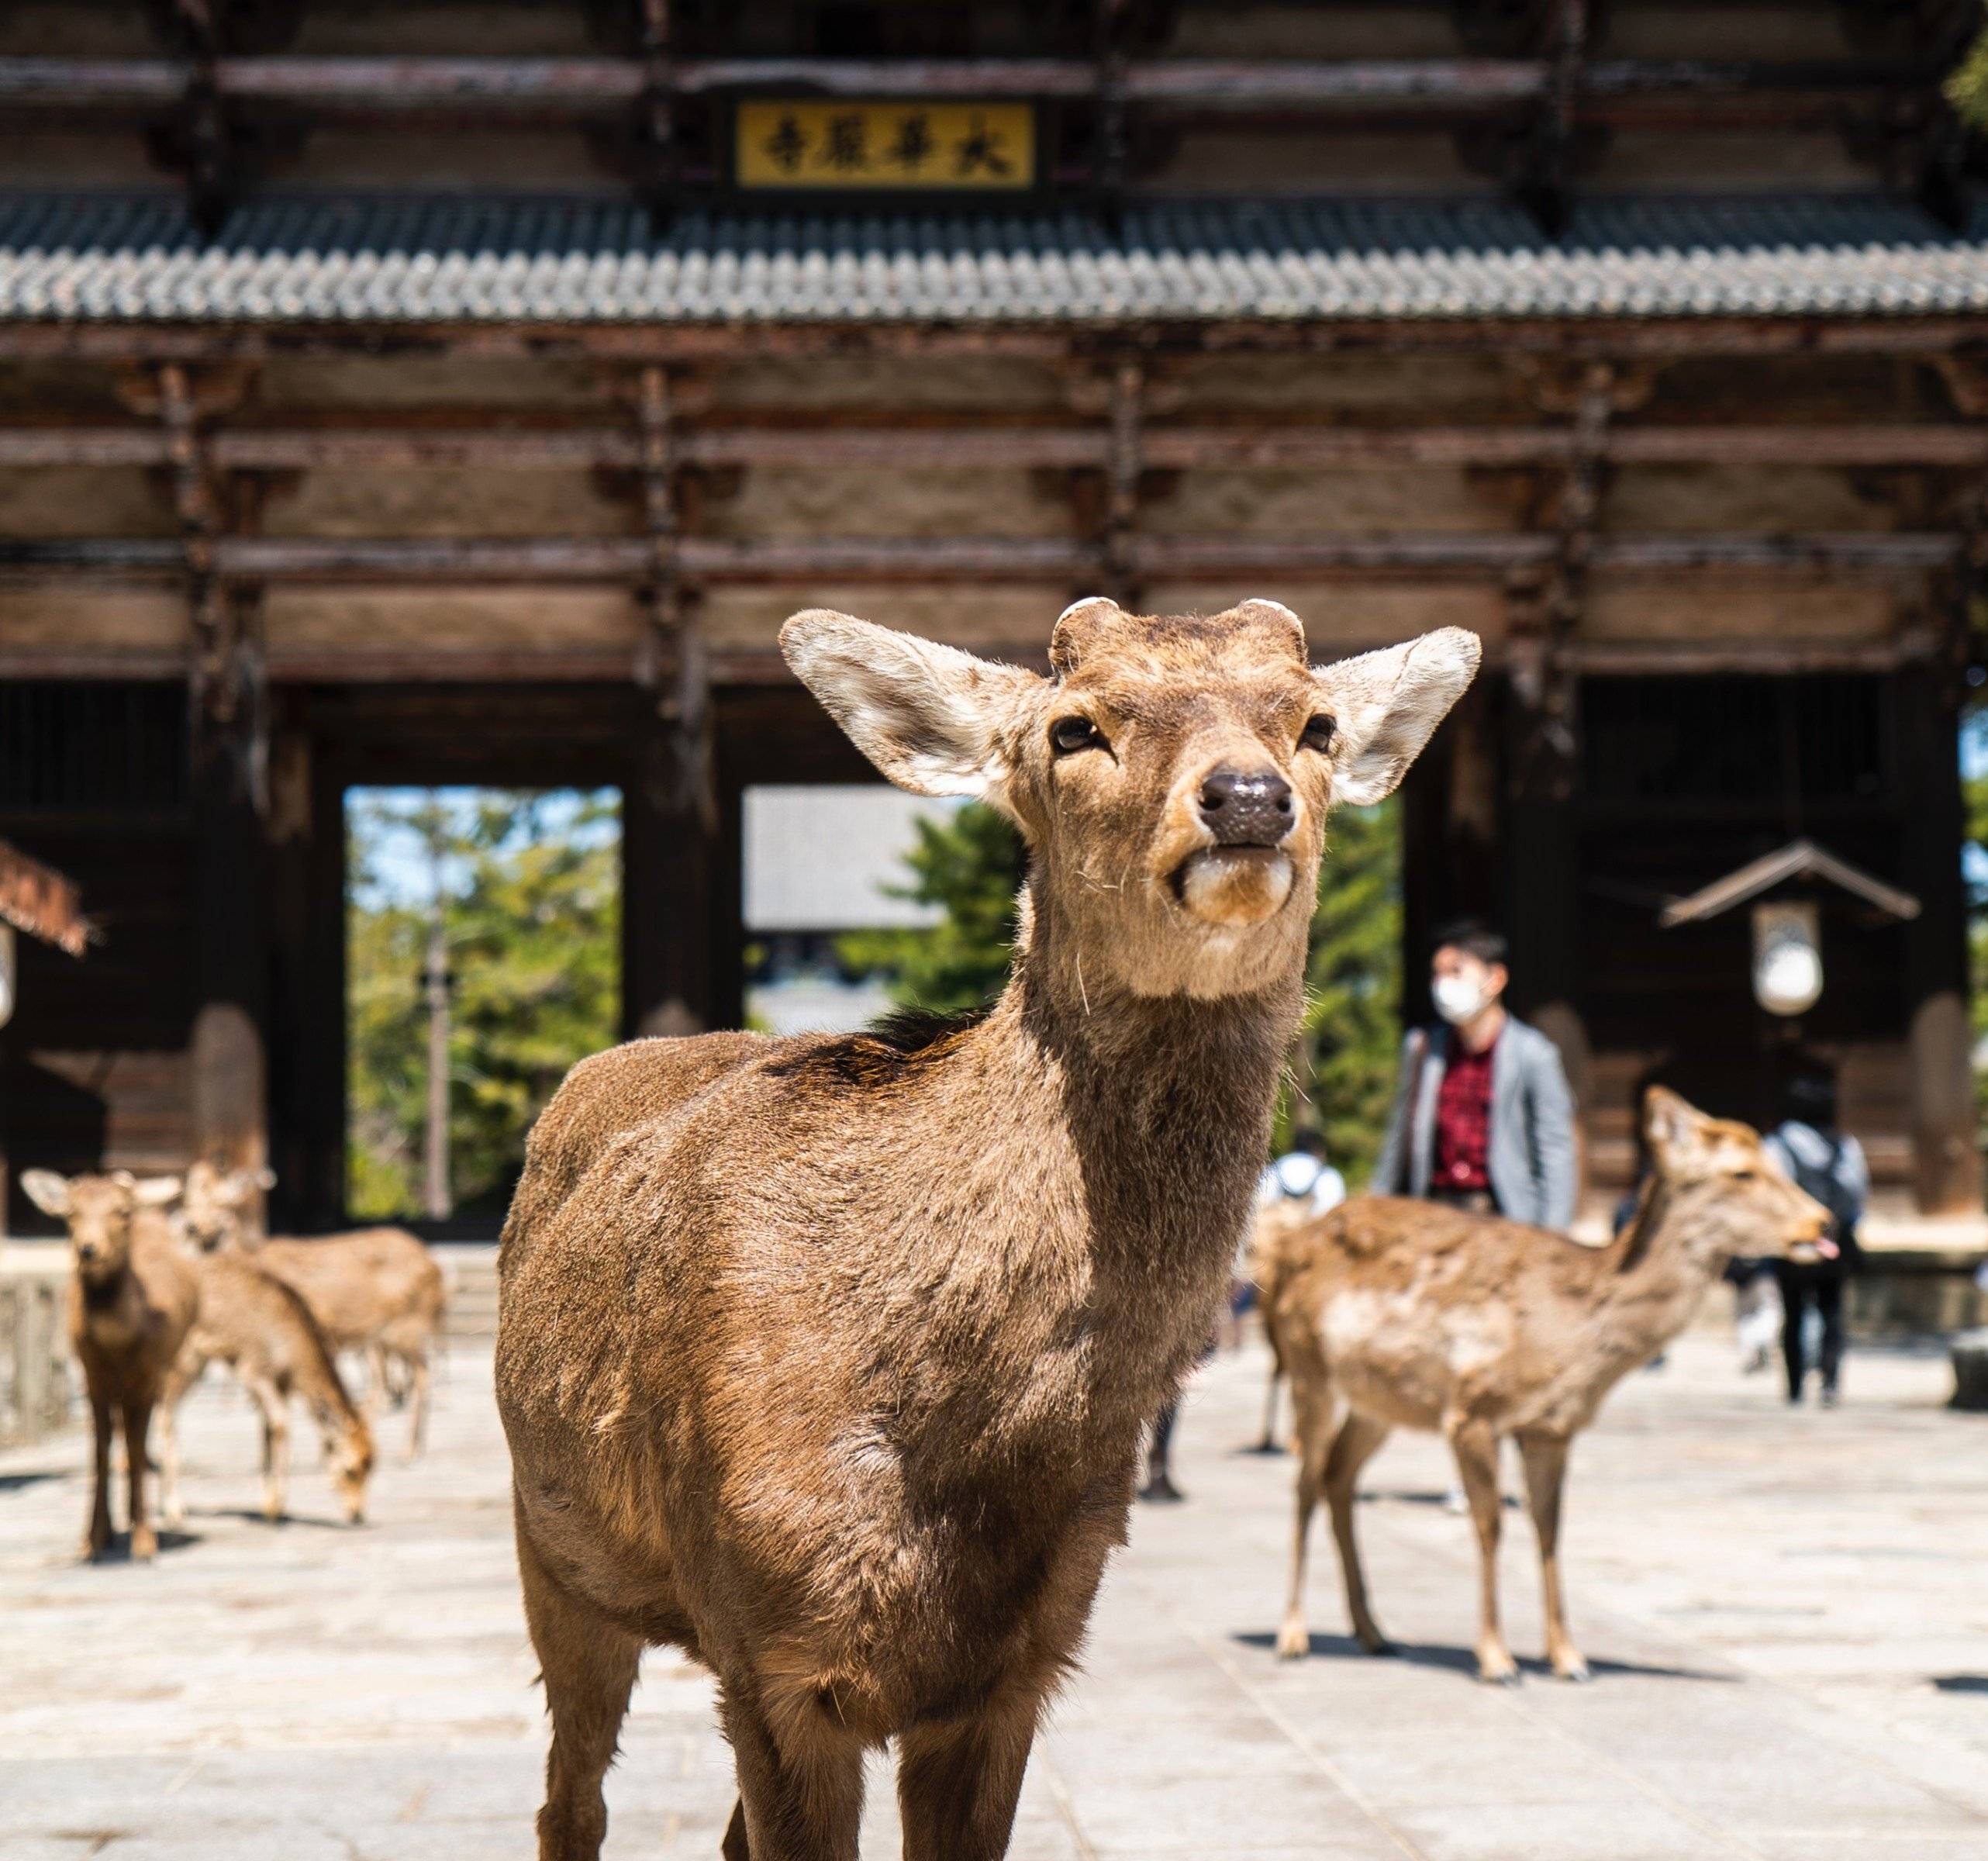 La splendita Nara e suoi adorabili cervi!